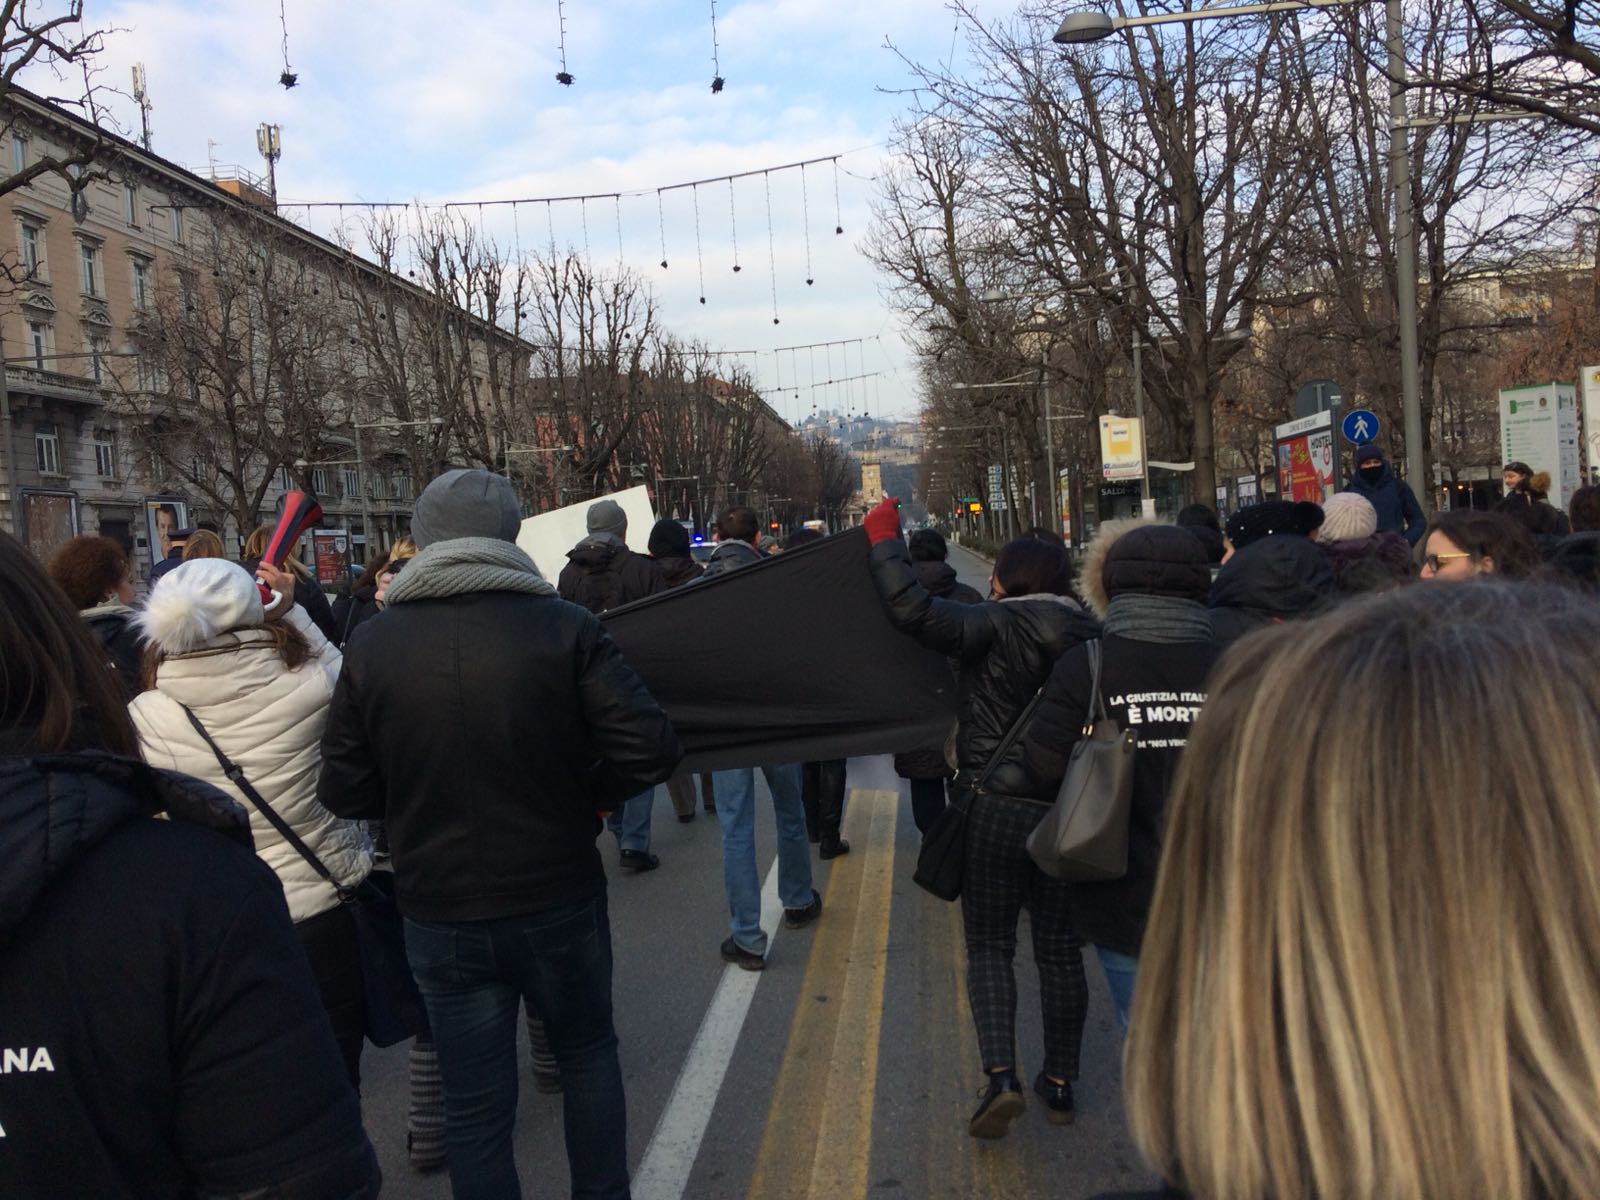 diplomati magistrali girotondo di protesta a Bergamo